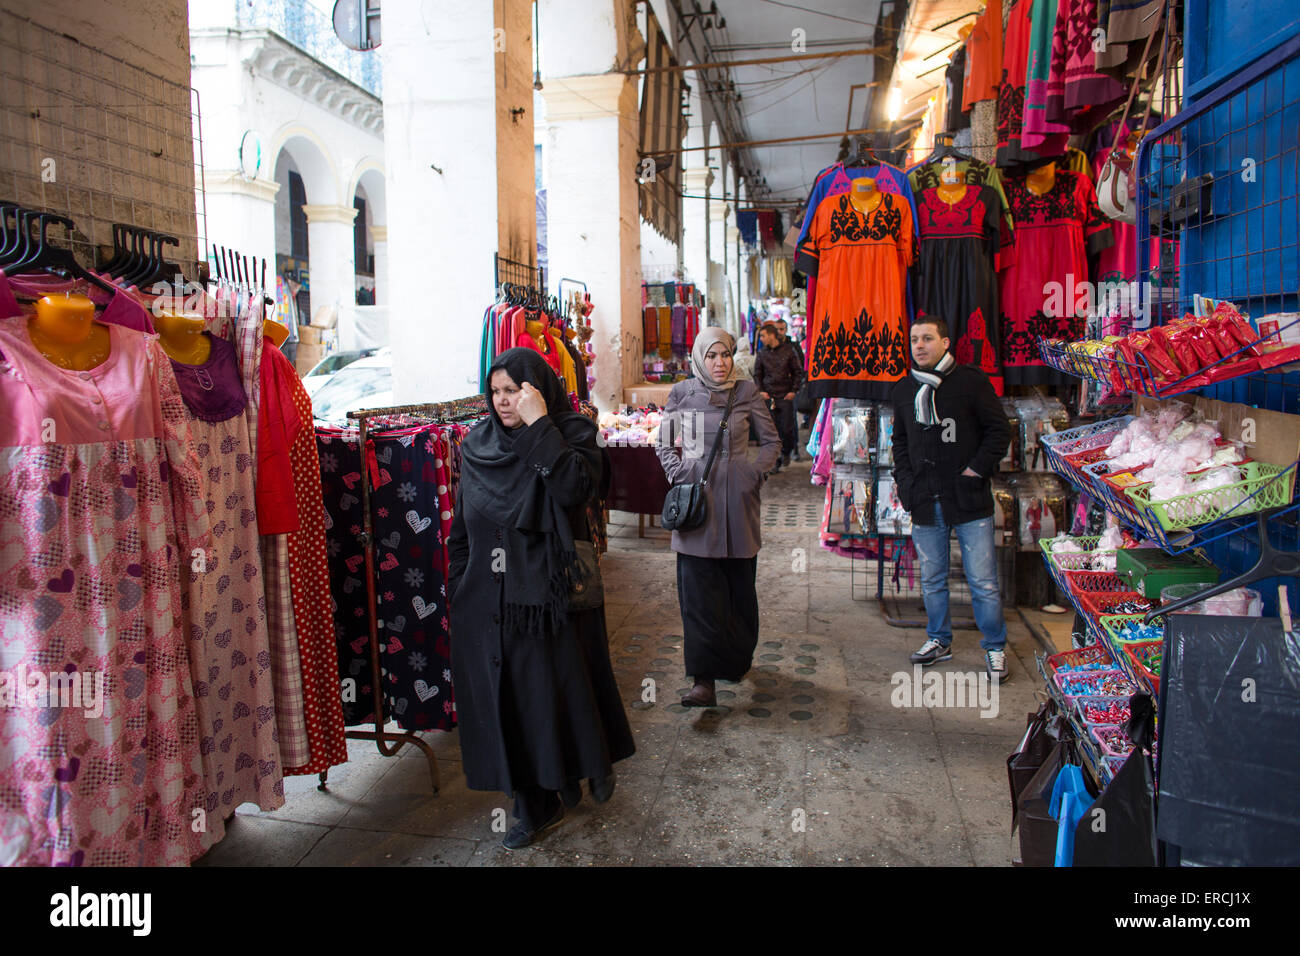 Mercado de ropa en Argel, Argelia Foto de stock